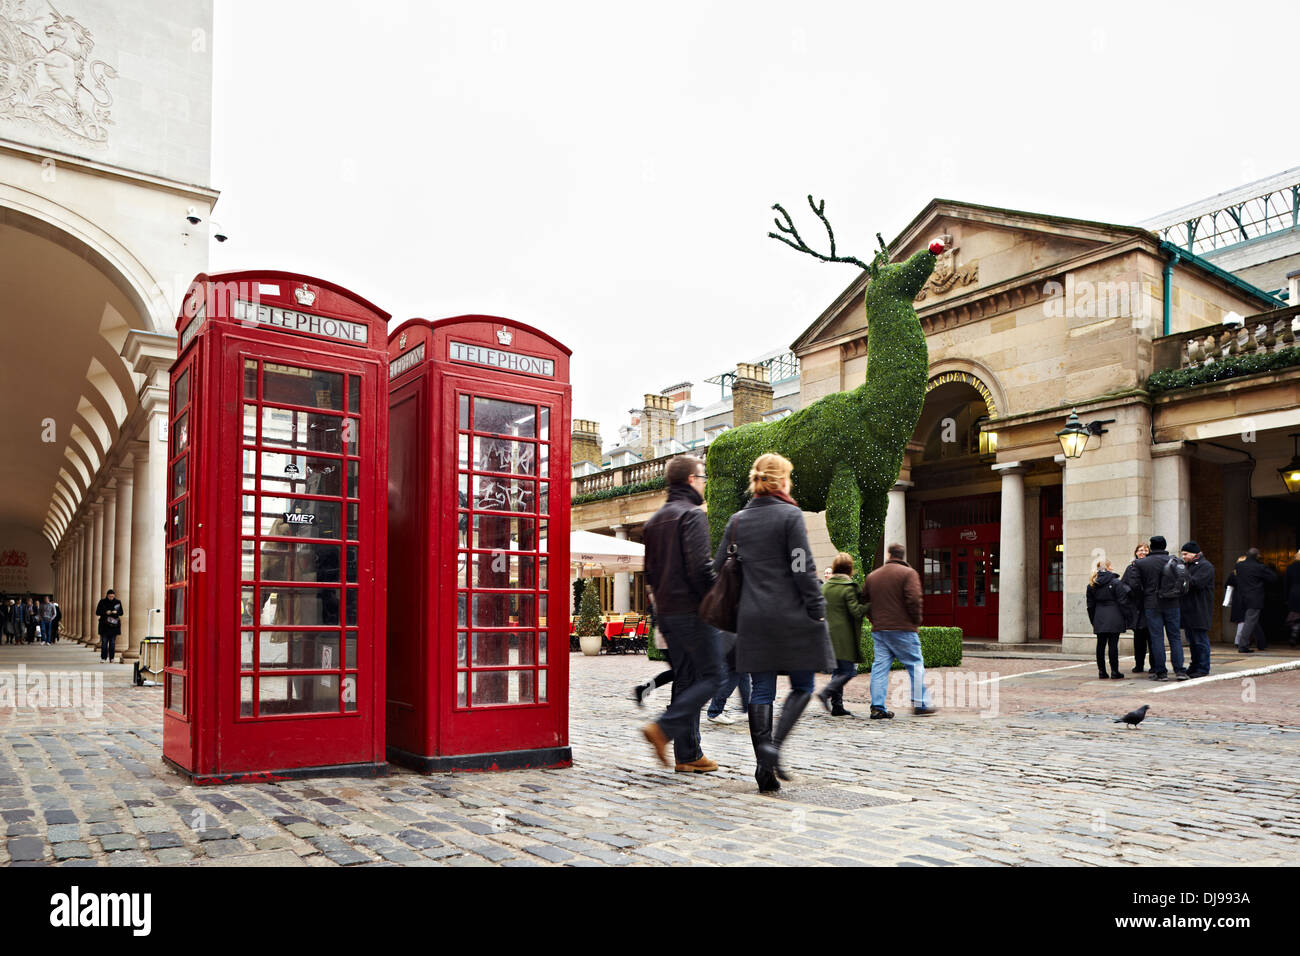 Boite telephne rouge et shoppers Noël, Covent Garden, London, England, UK Banque D'Images